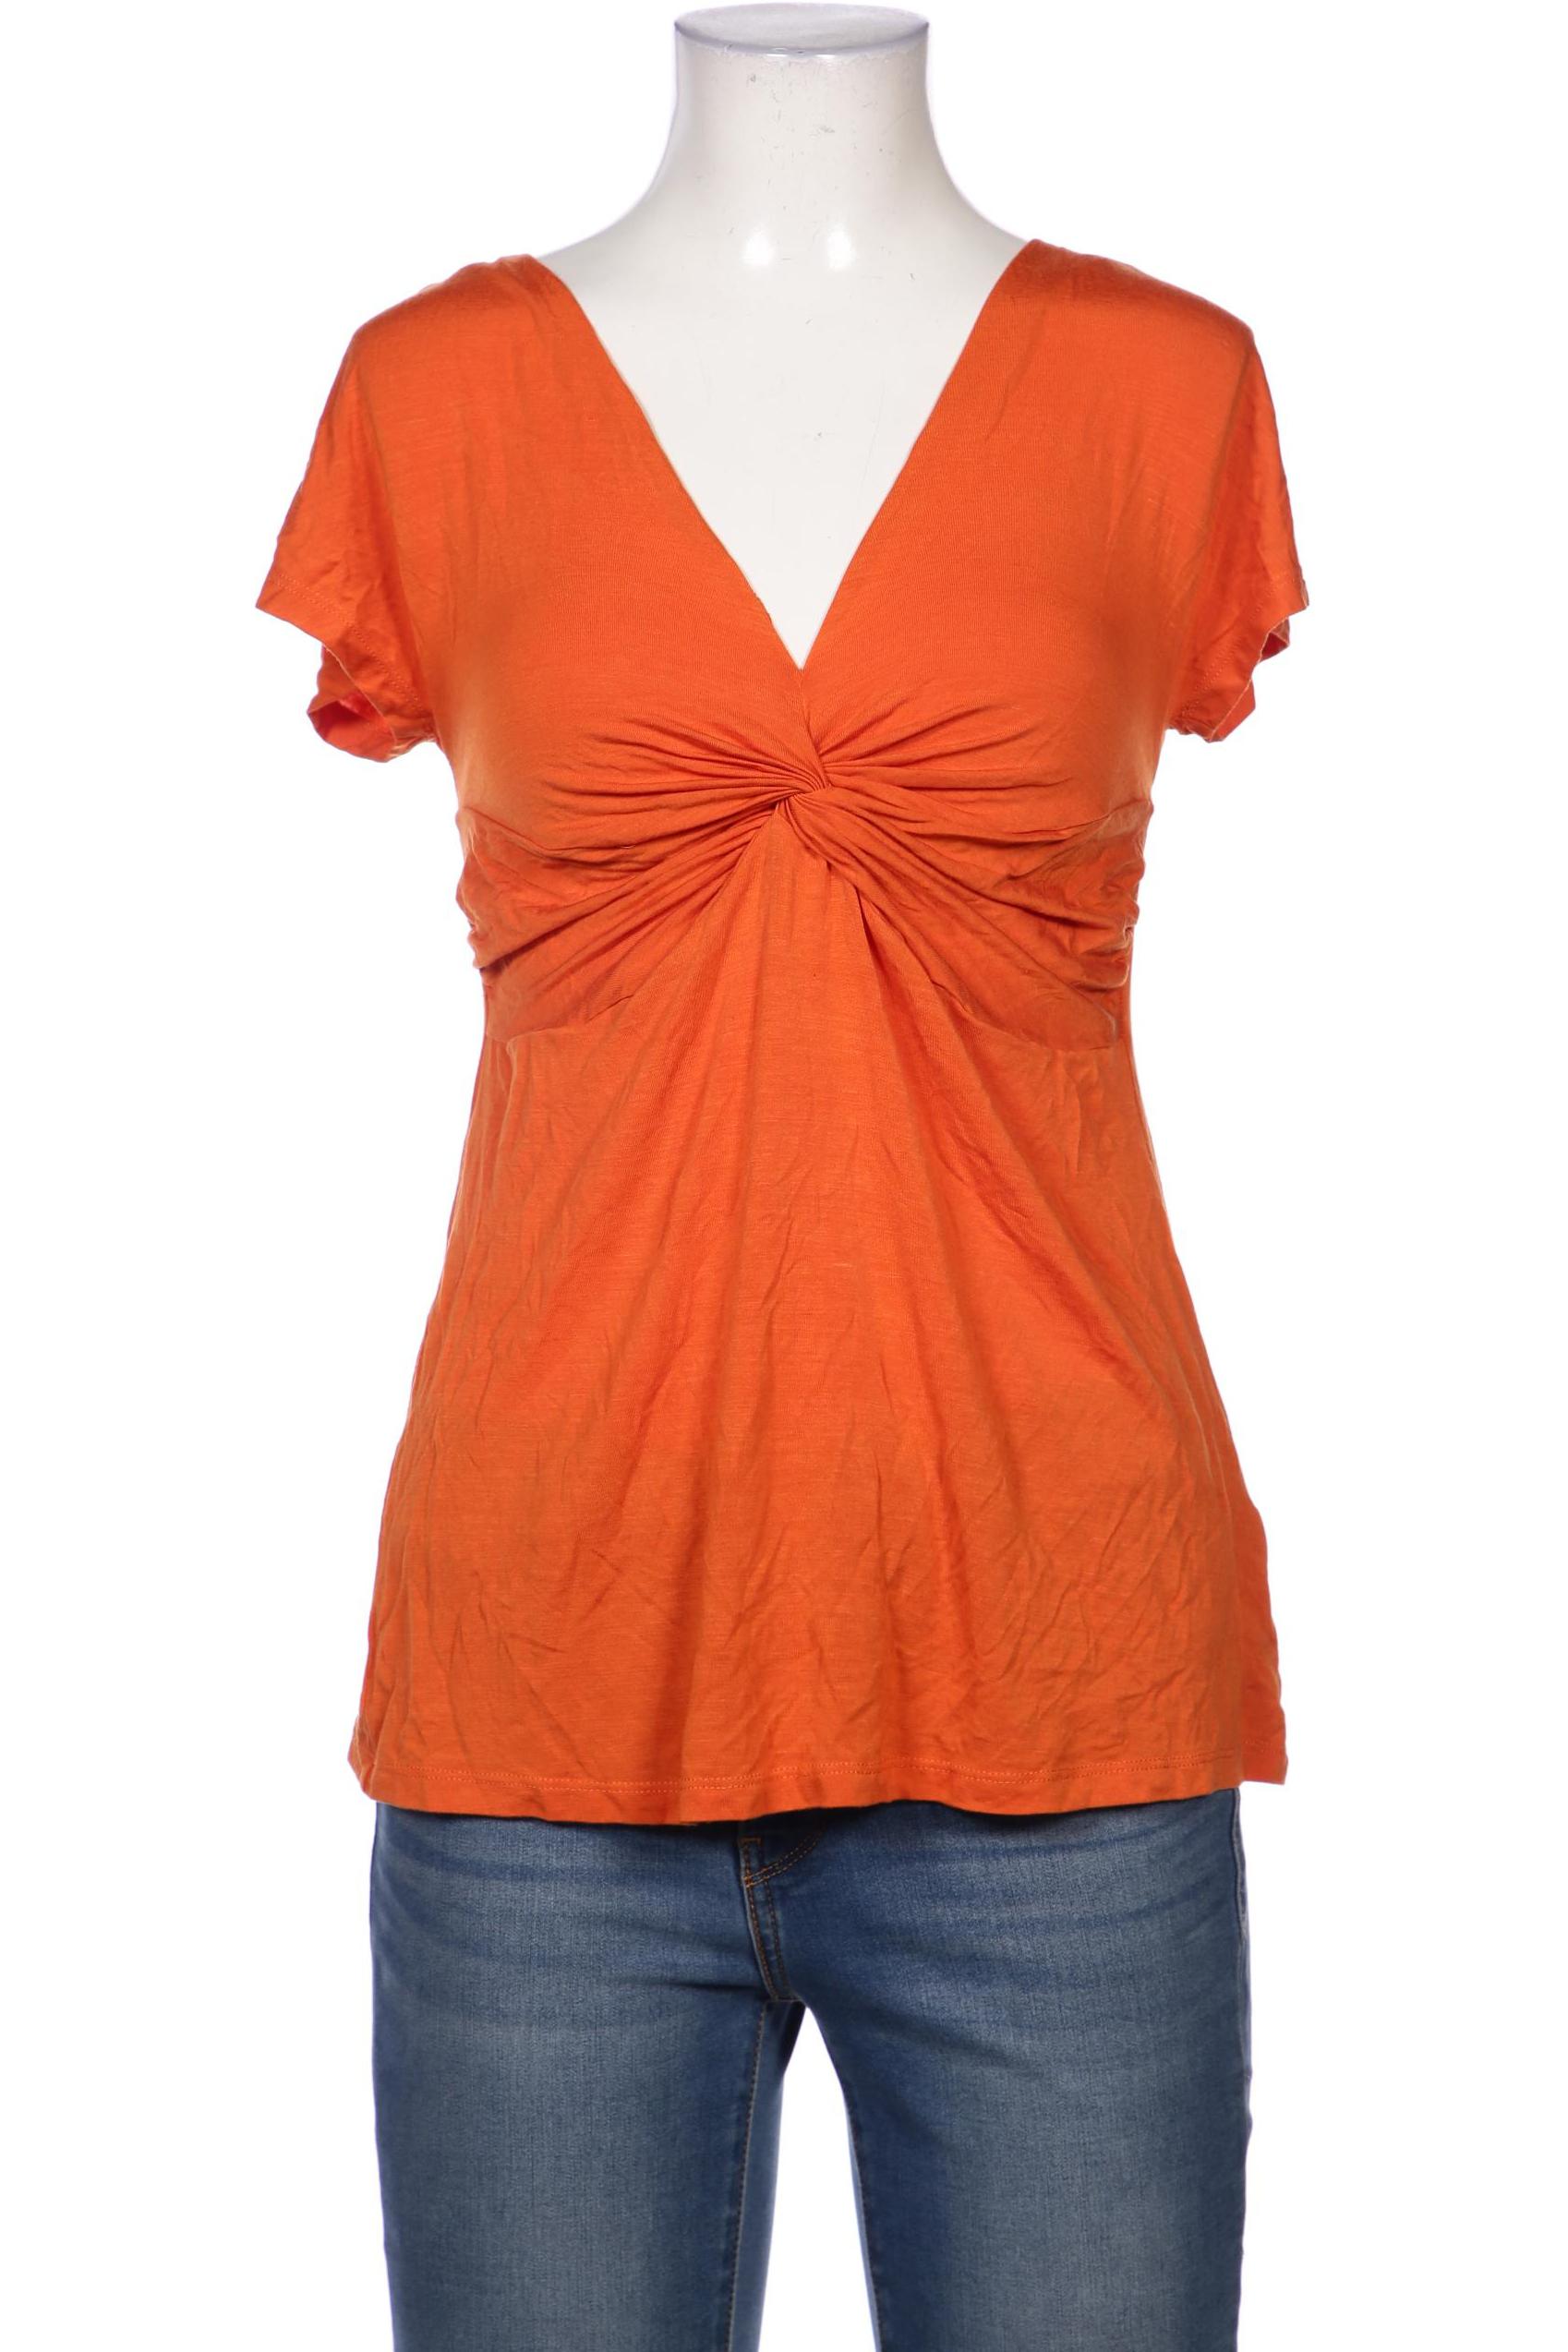 Marciano Damen T-Shirt, orange, Gr. 32 von Marciano